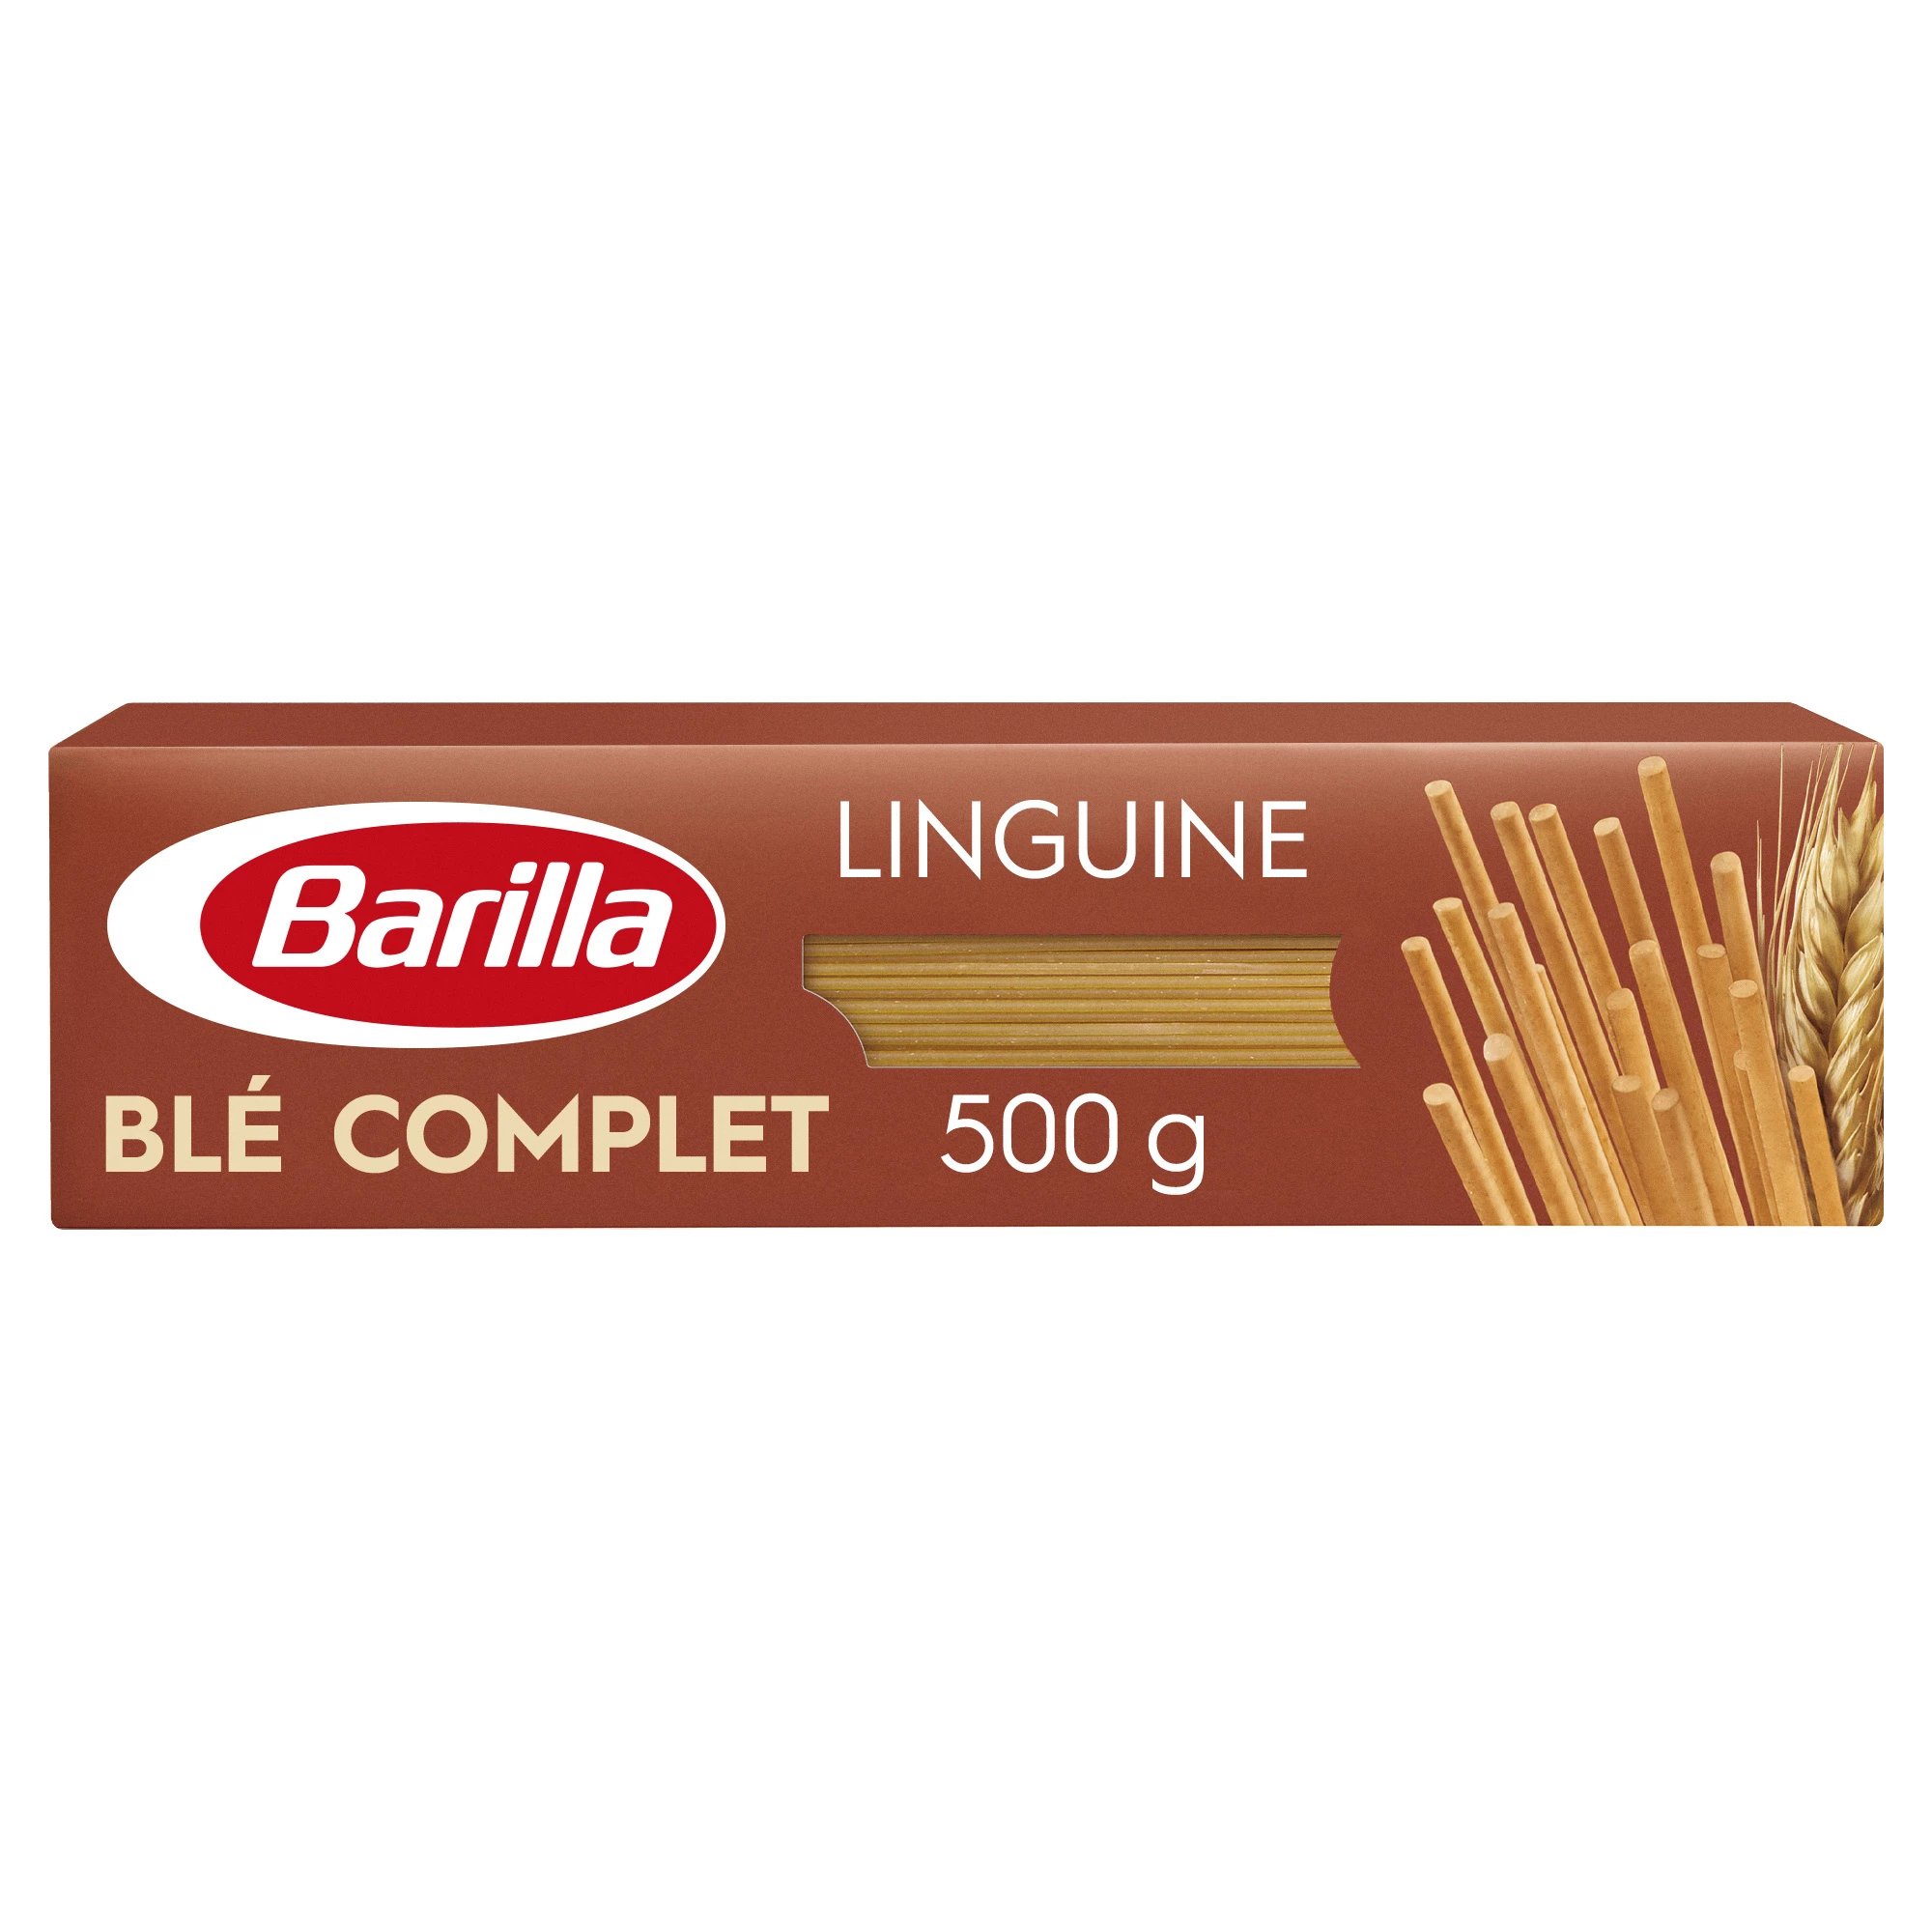 Linguine Ble Completo 500g